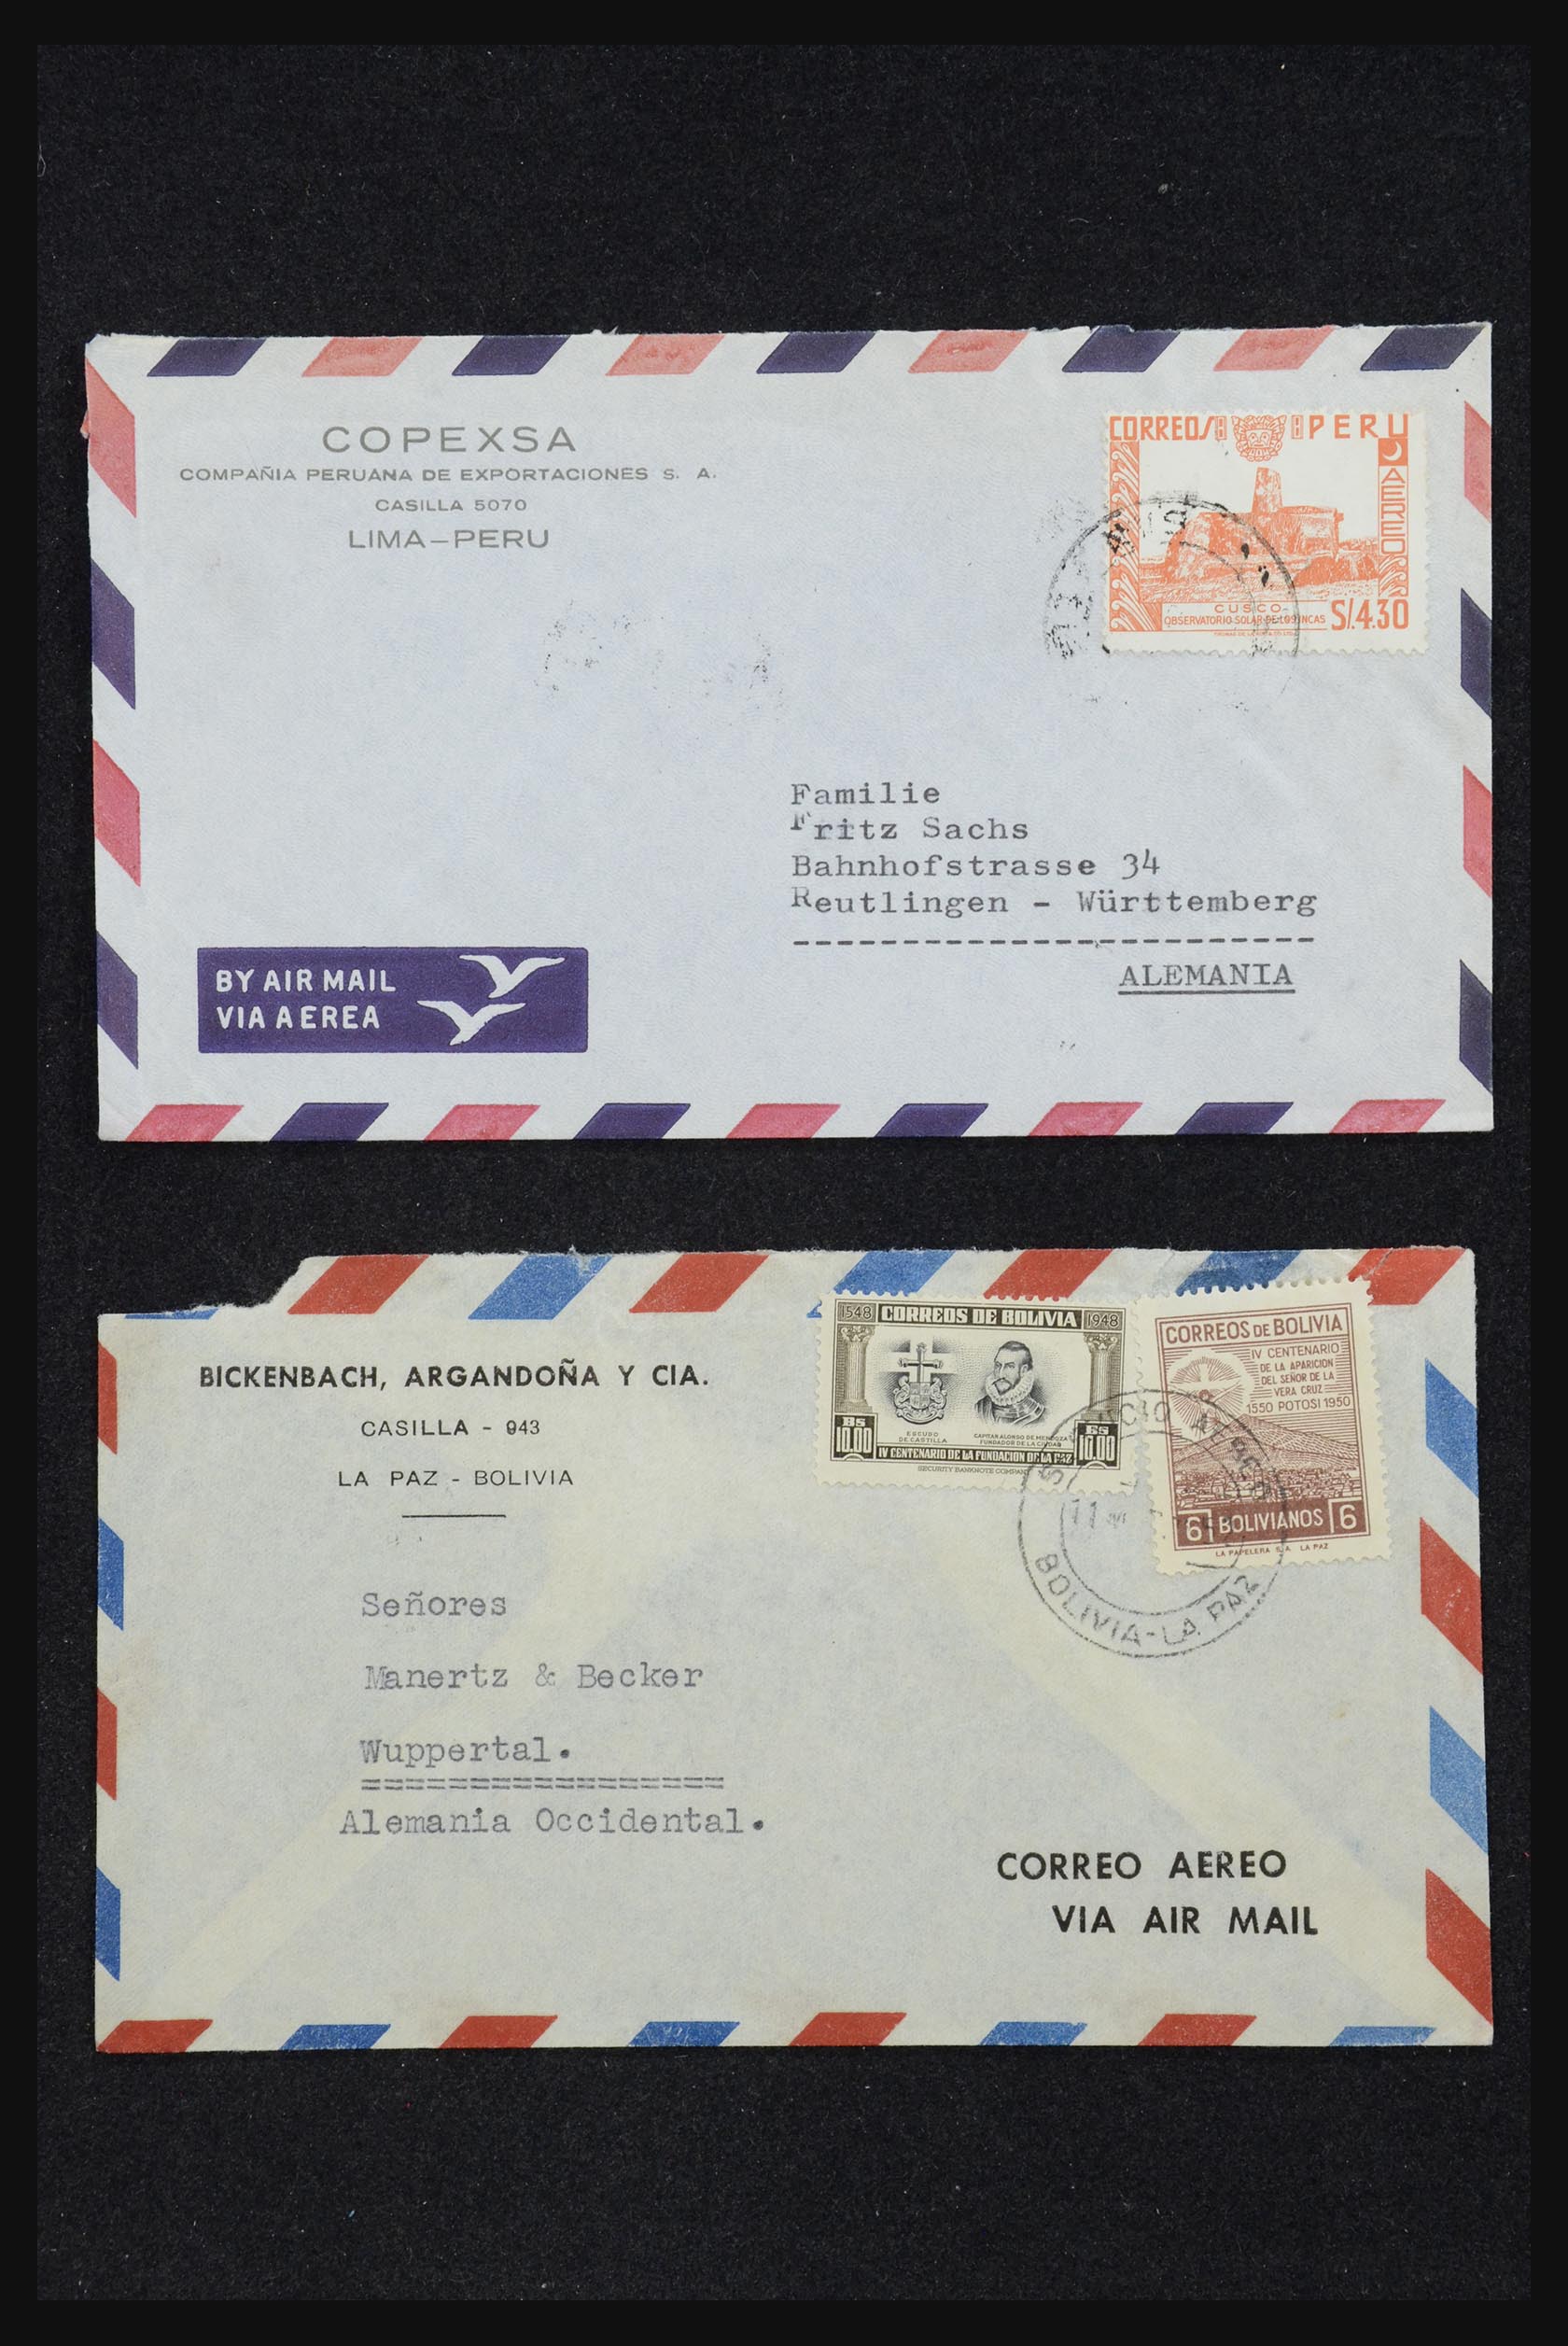 32109 054 - 32109 Peru covers 1934-1990.